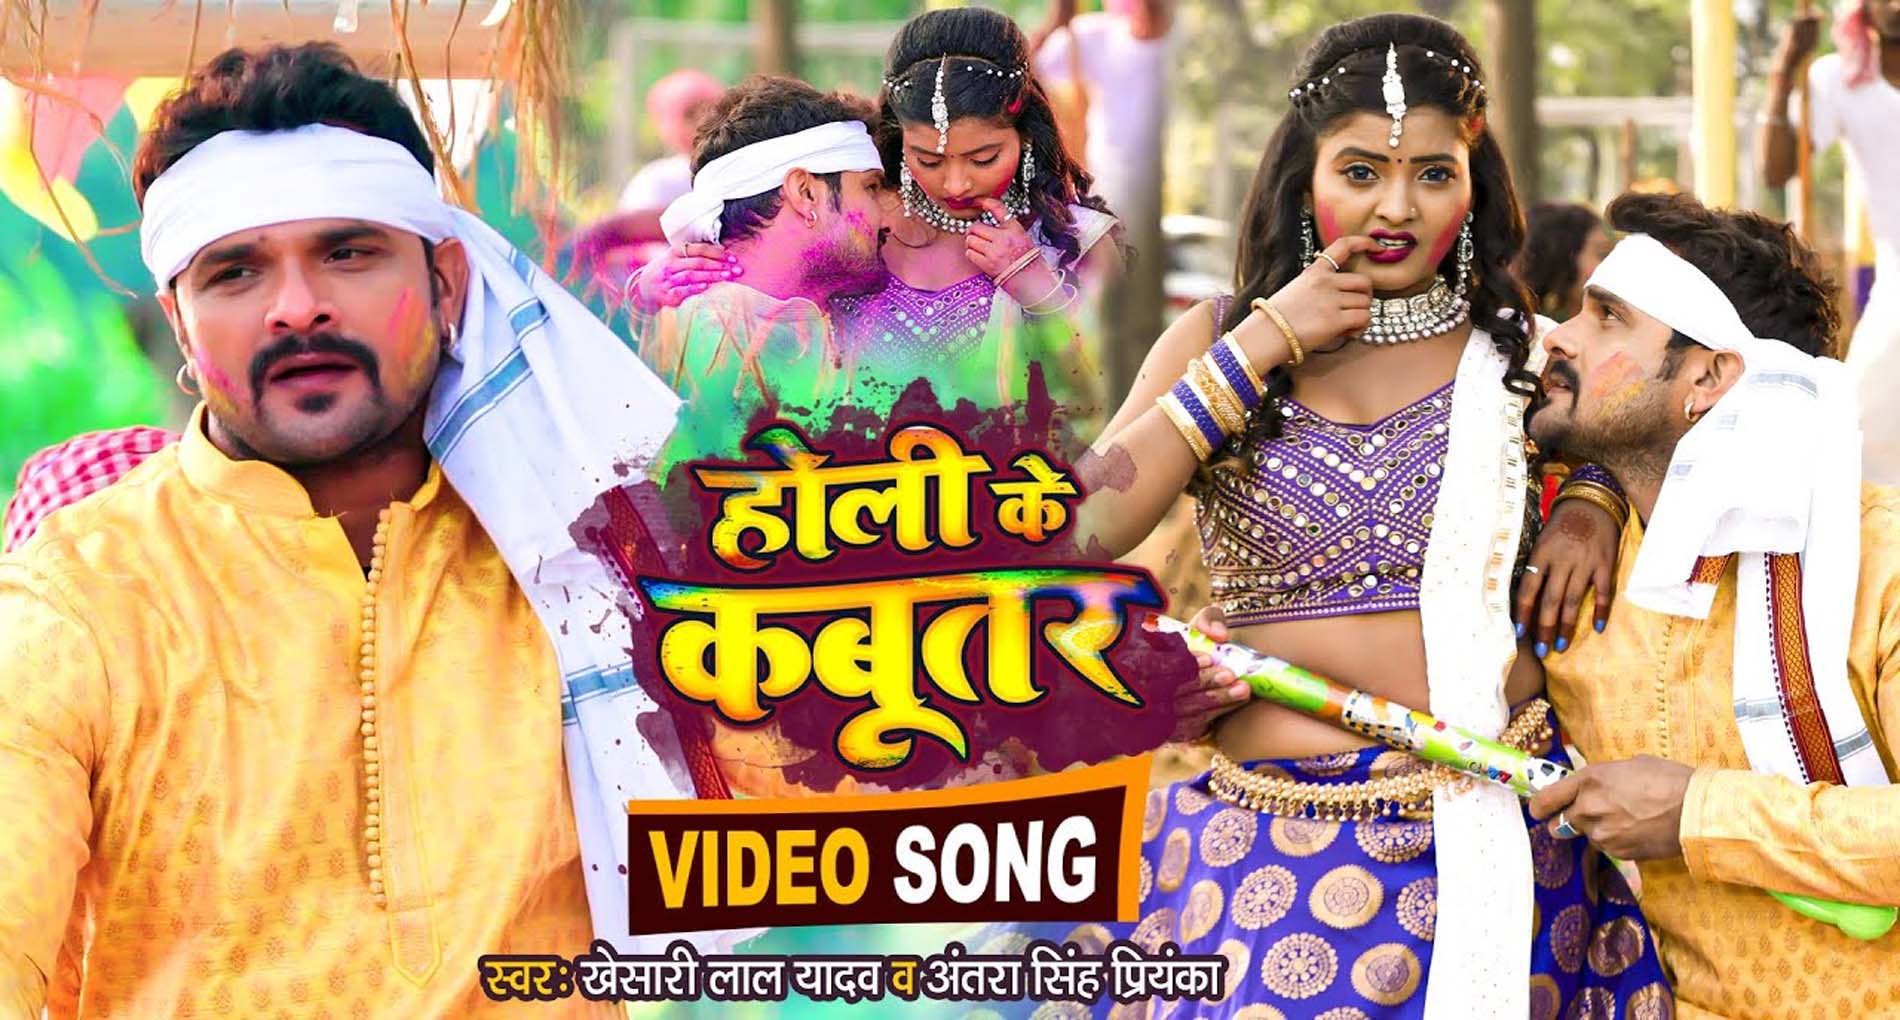 Bhojpuri Holi Song 2022: खेसारी लाल यादव का गाना ‘होली के कबूतर’ हुआ Viral, देखें जीजा-साली की शरारत!